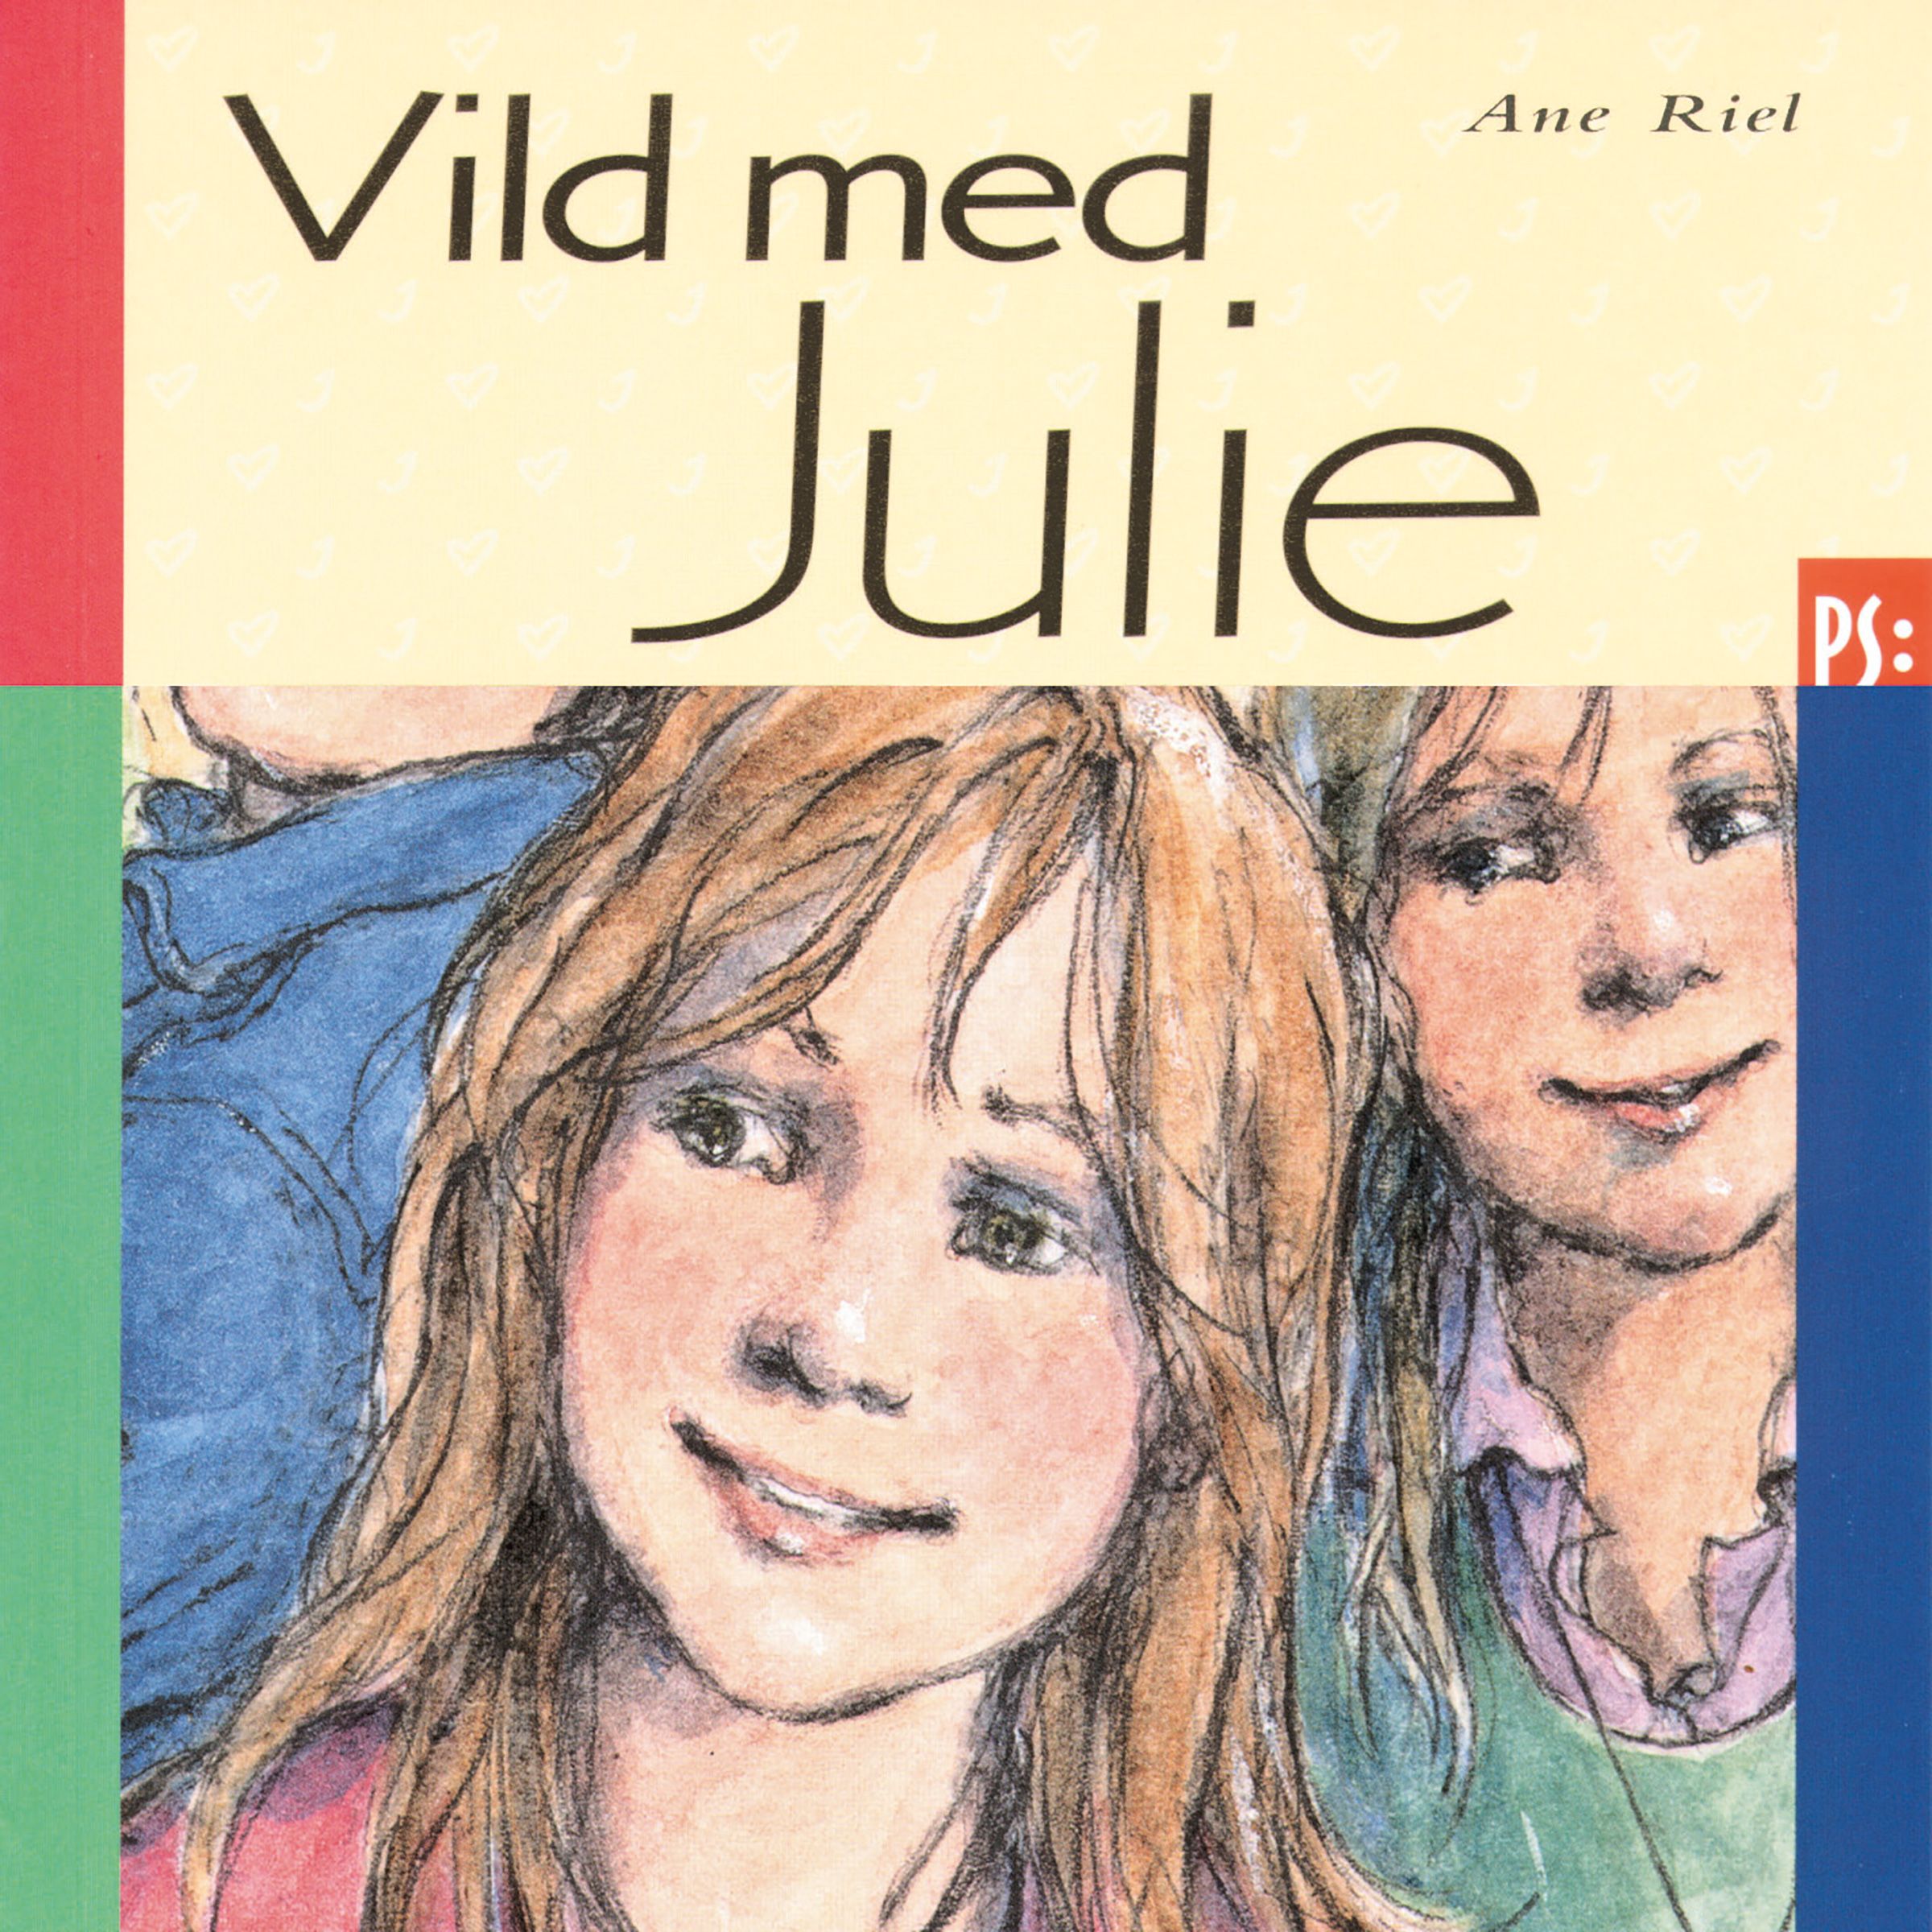 Vild med Julie, audiobook by Ane Riel